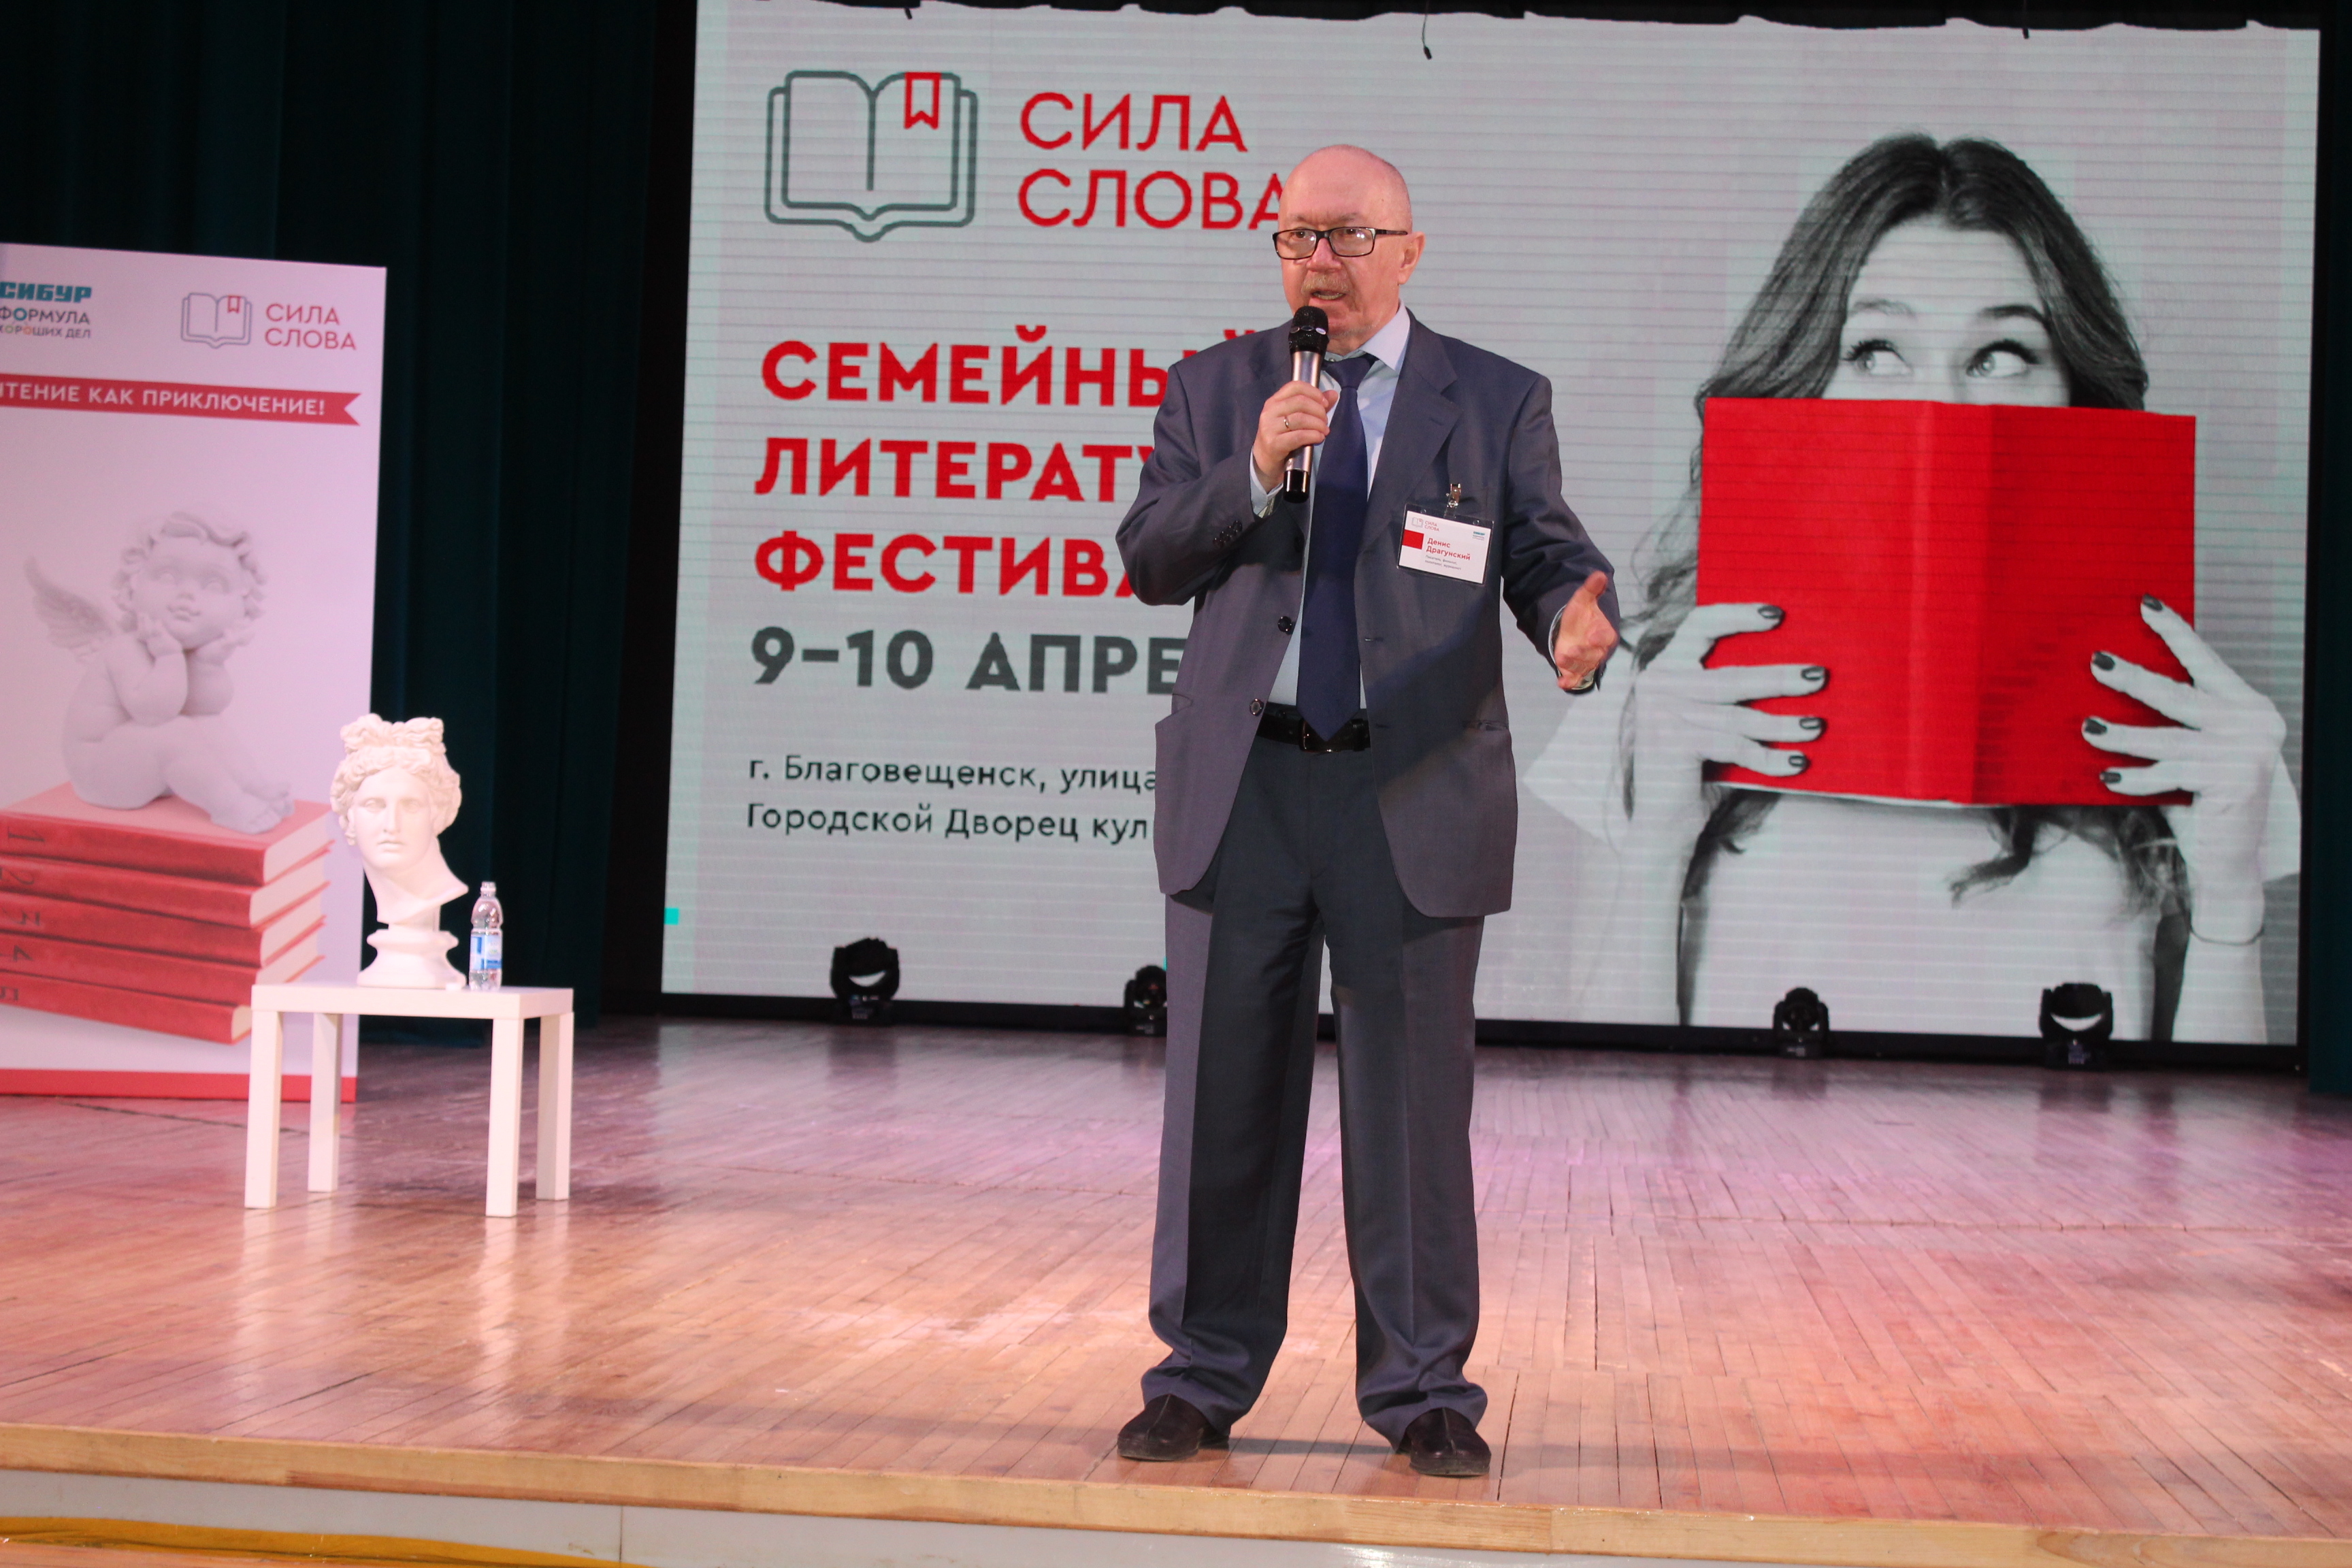 В Башкирию на семейный литературный фестиваль приехал известный российский писатель Денис Драгунский